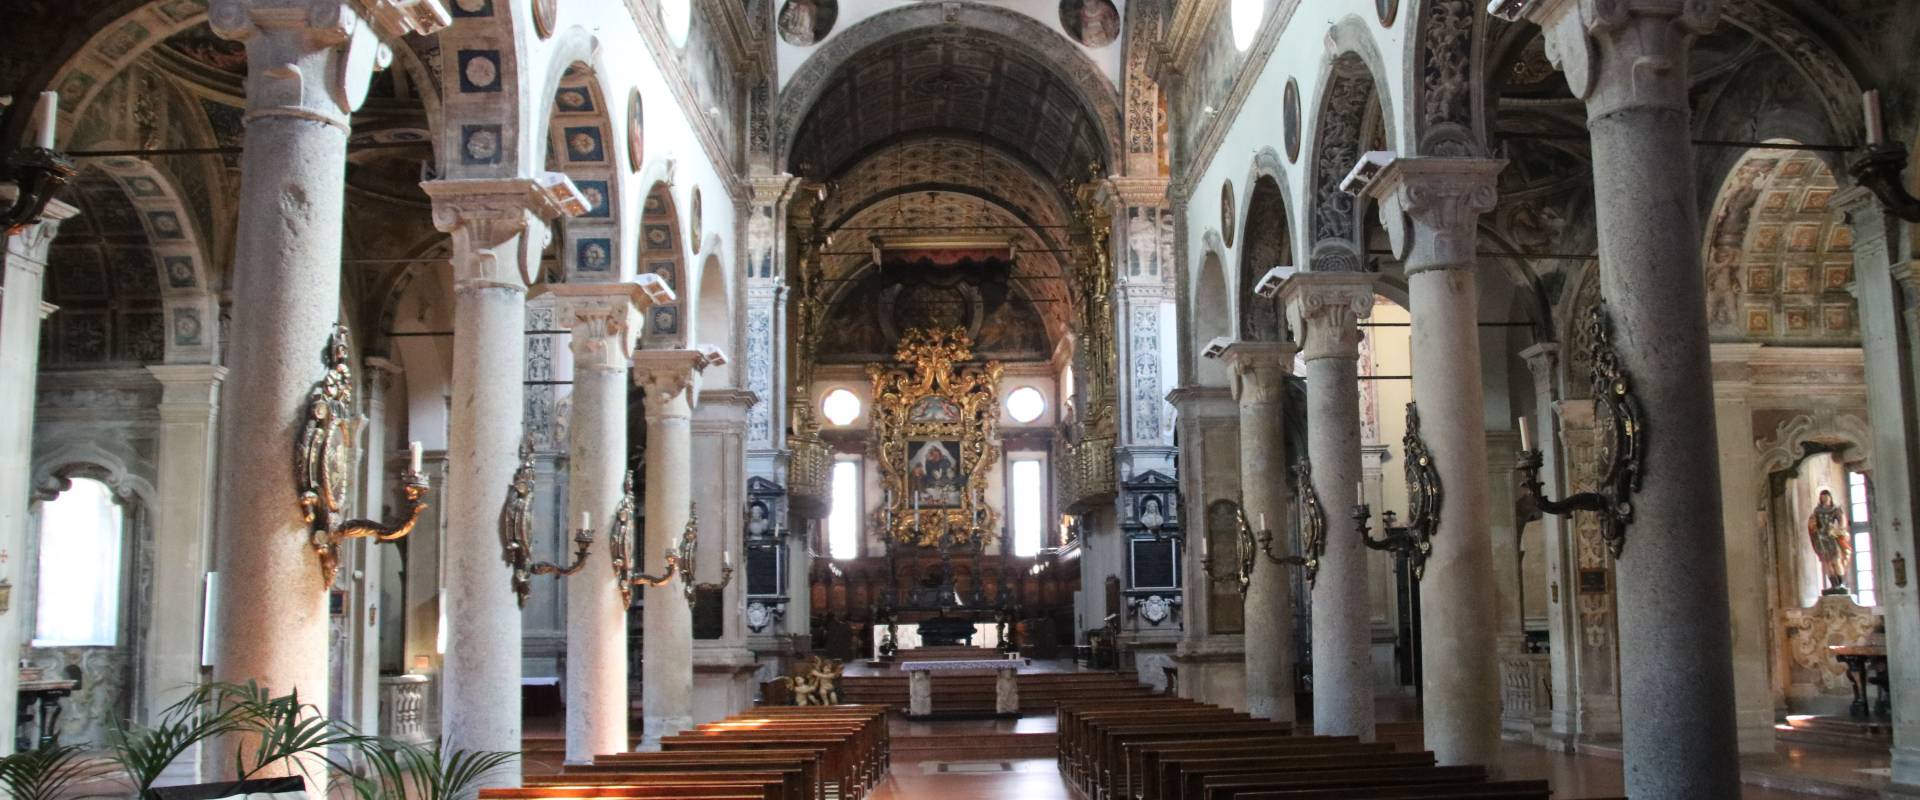 Chiesa di San Sisto (Piacenza), interno 03 foto di Mongolo1984